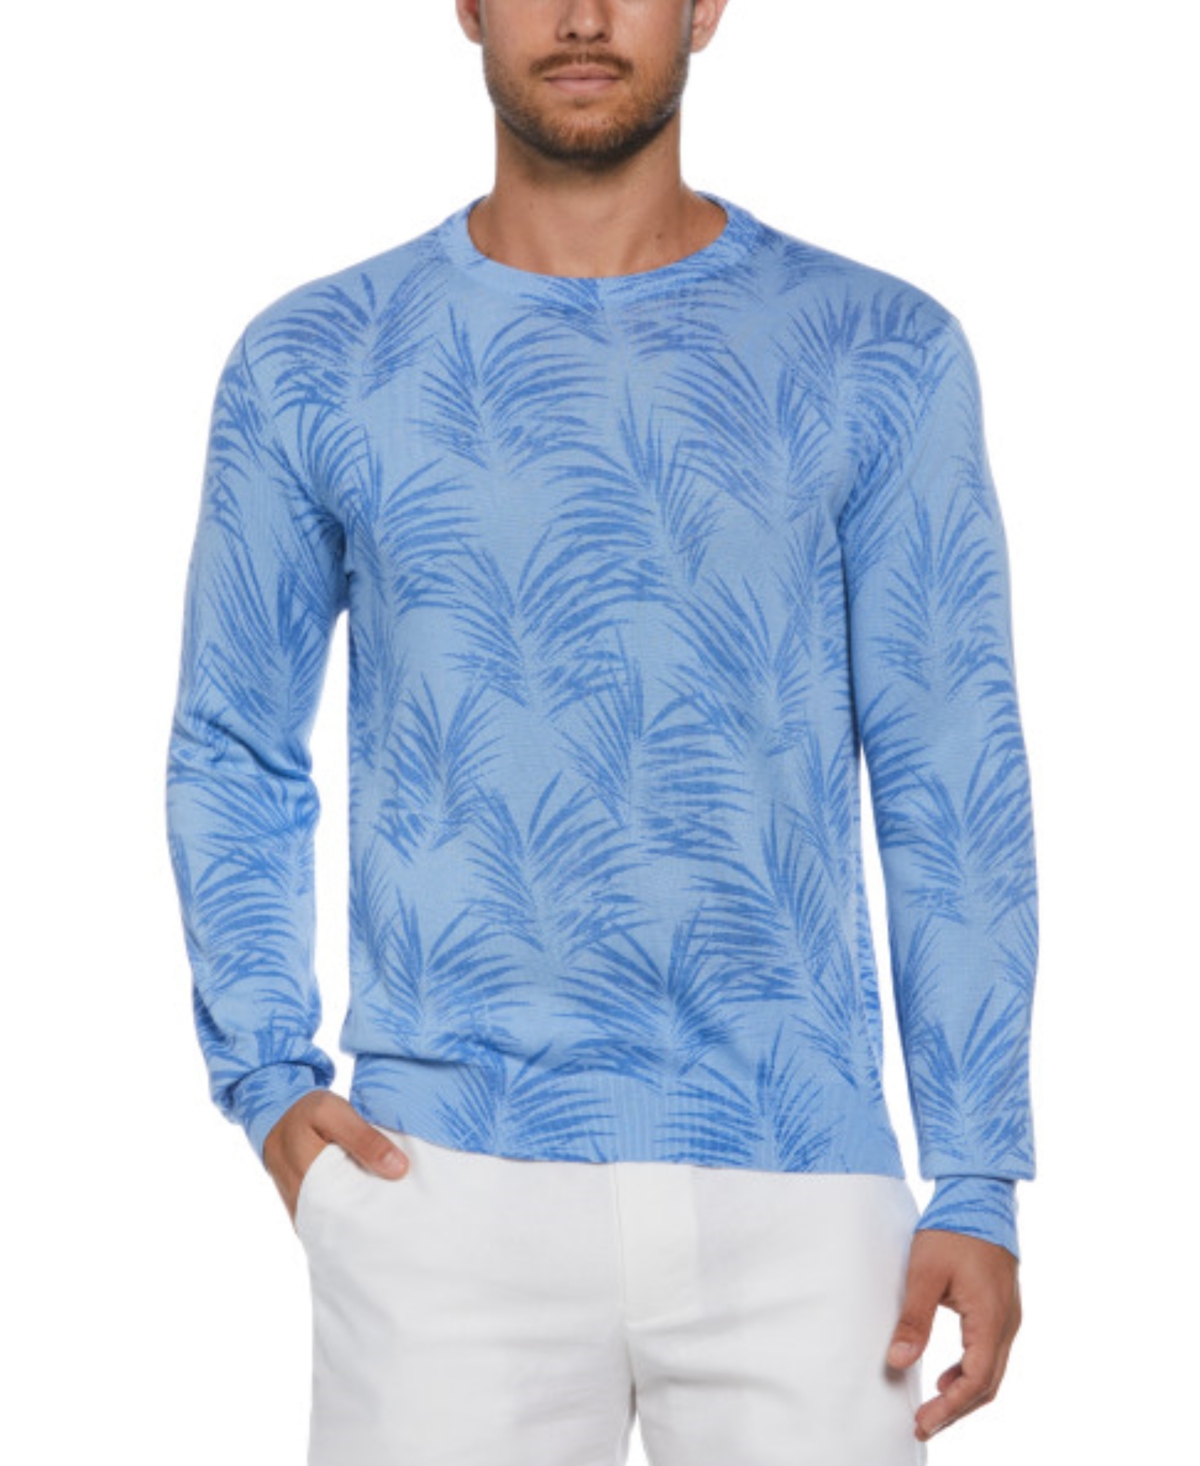 Men's Palm Print Crewneck Jacquard Sweater - Della Robin Blue